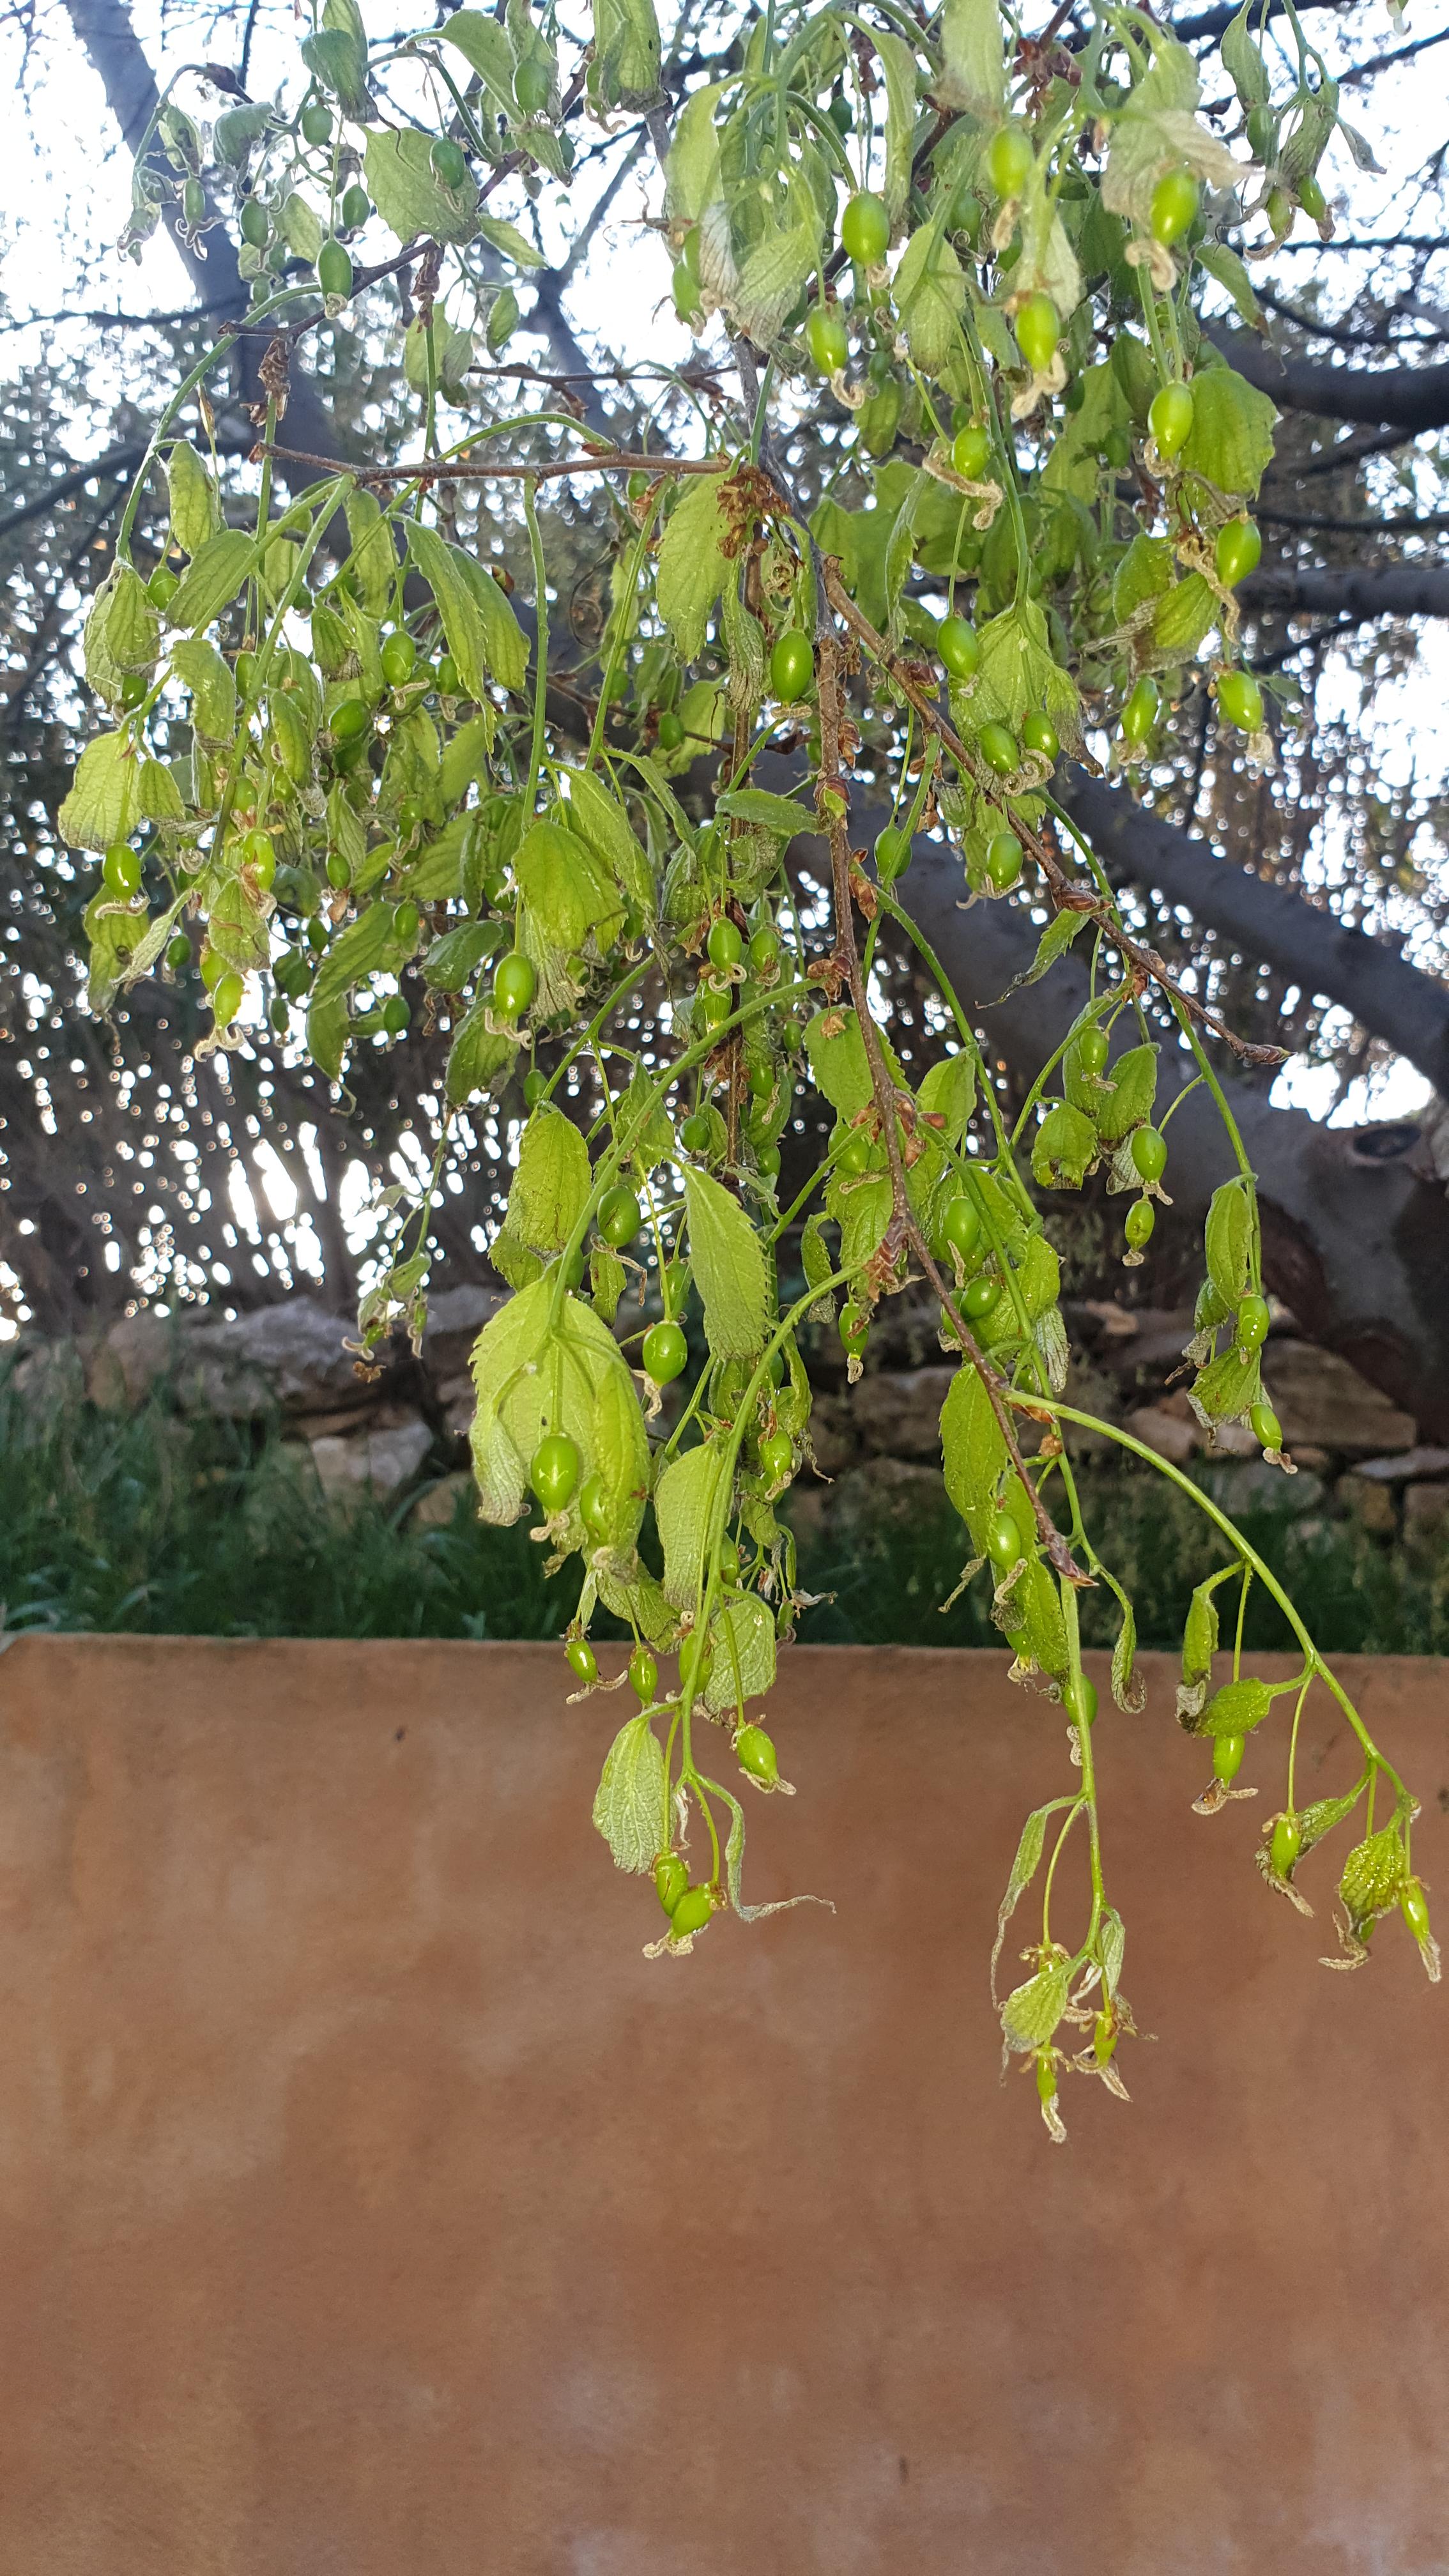 Vue du coté encore vert avec des fruits qui poussent mais même ici les feuilles commencent à se recourber et sécher aux extrémités